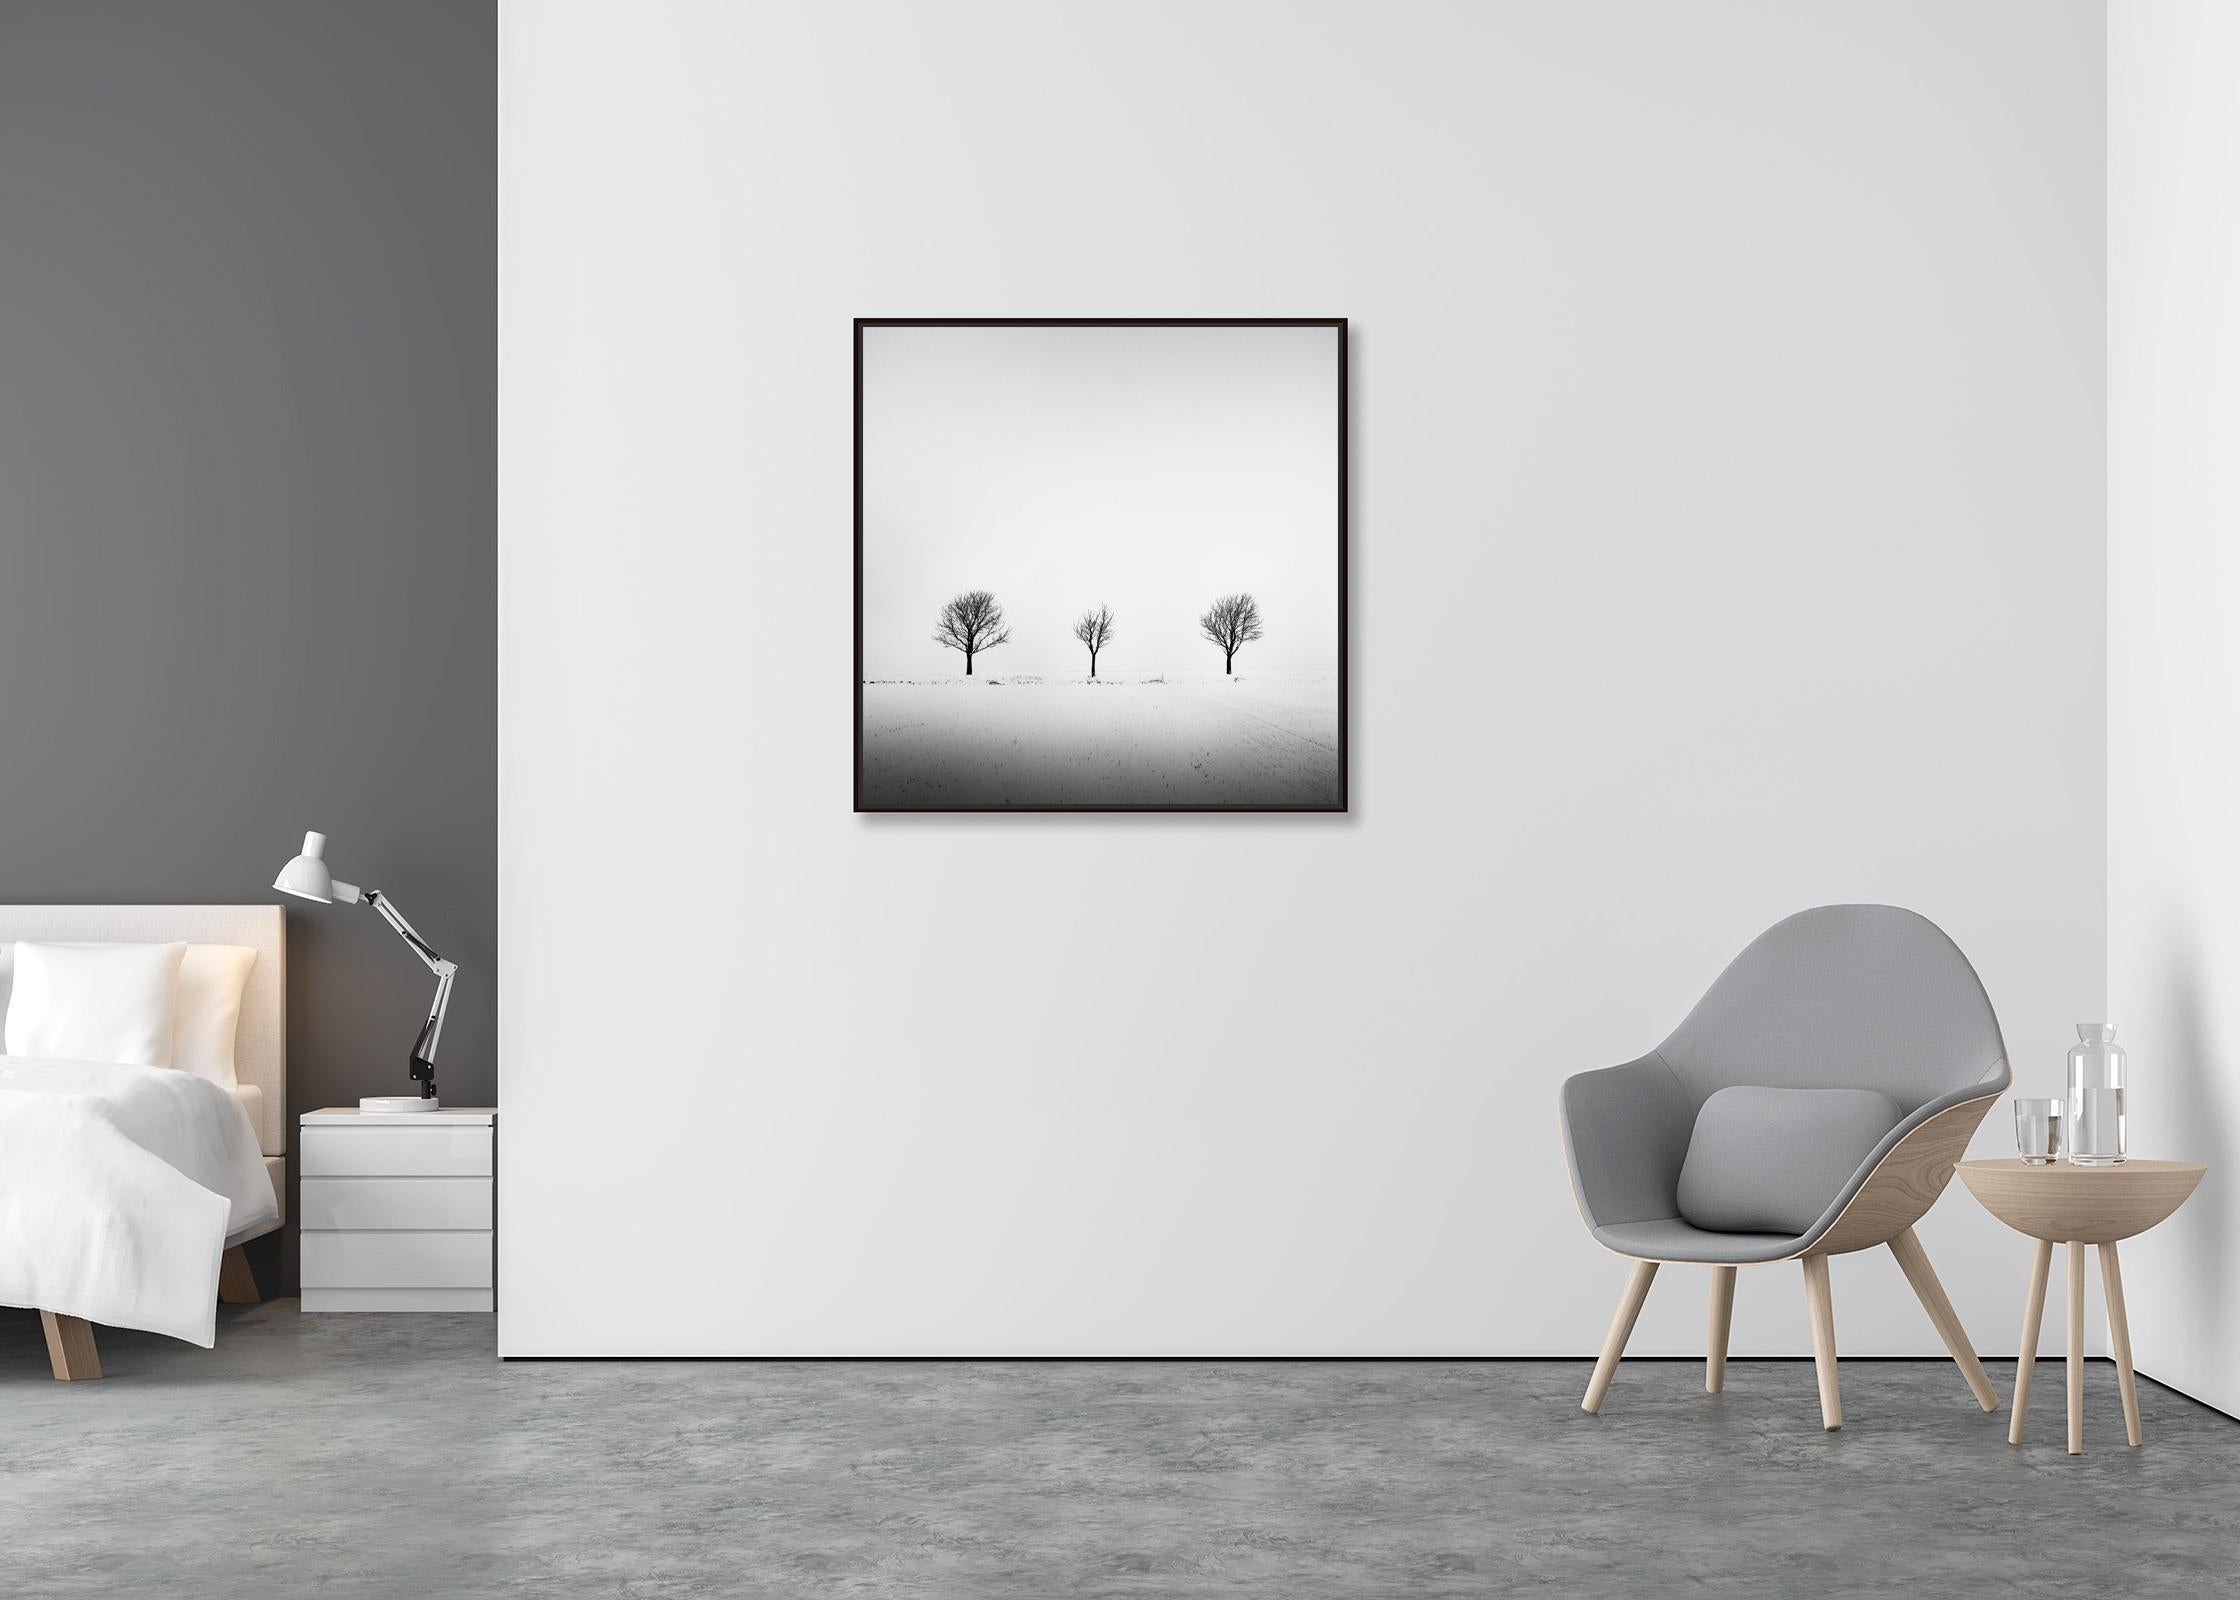 Arbres dans un champ enneigé, art minimal, photographie en noir et blanc, paysage - Contemporain Photograph par Gerald Berghammer